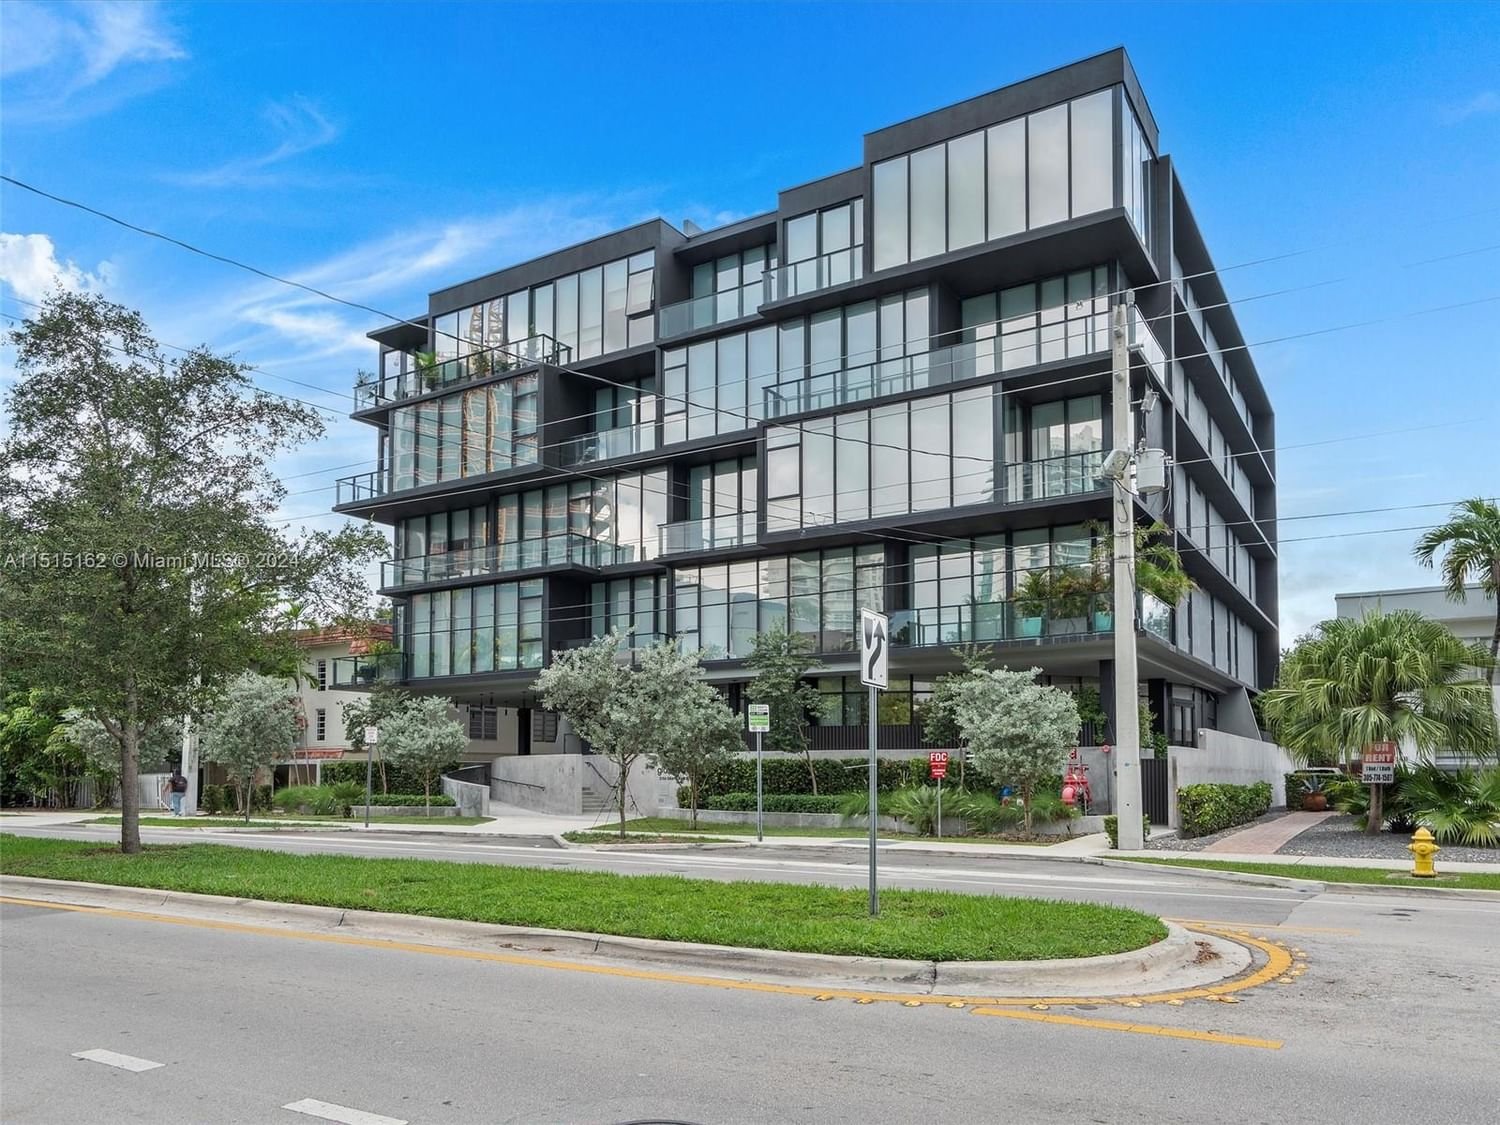 Real estate property located at 3156 27th Ave #103, Miami-Dade County, Coconut Grove, Miami, FL